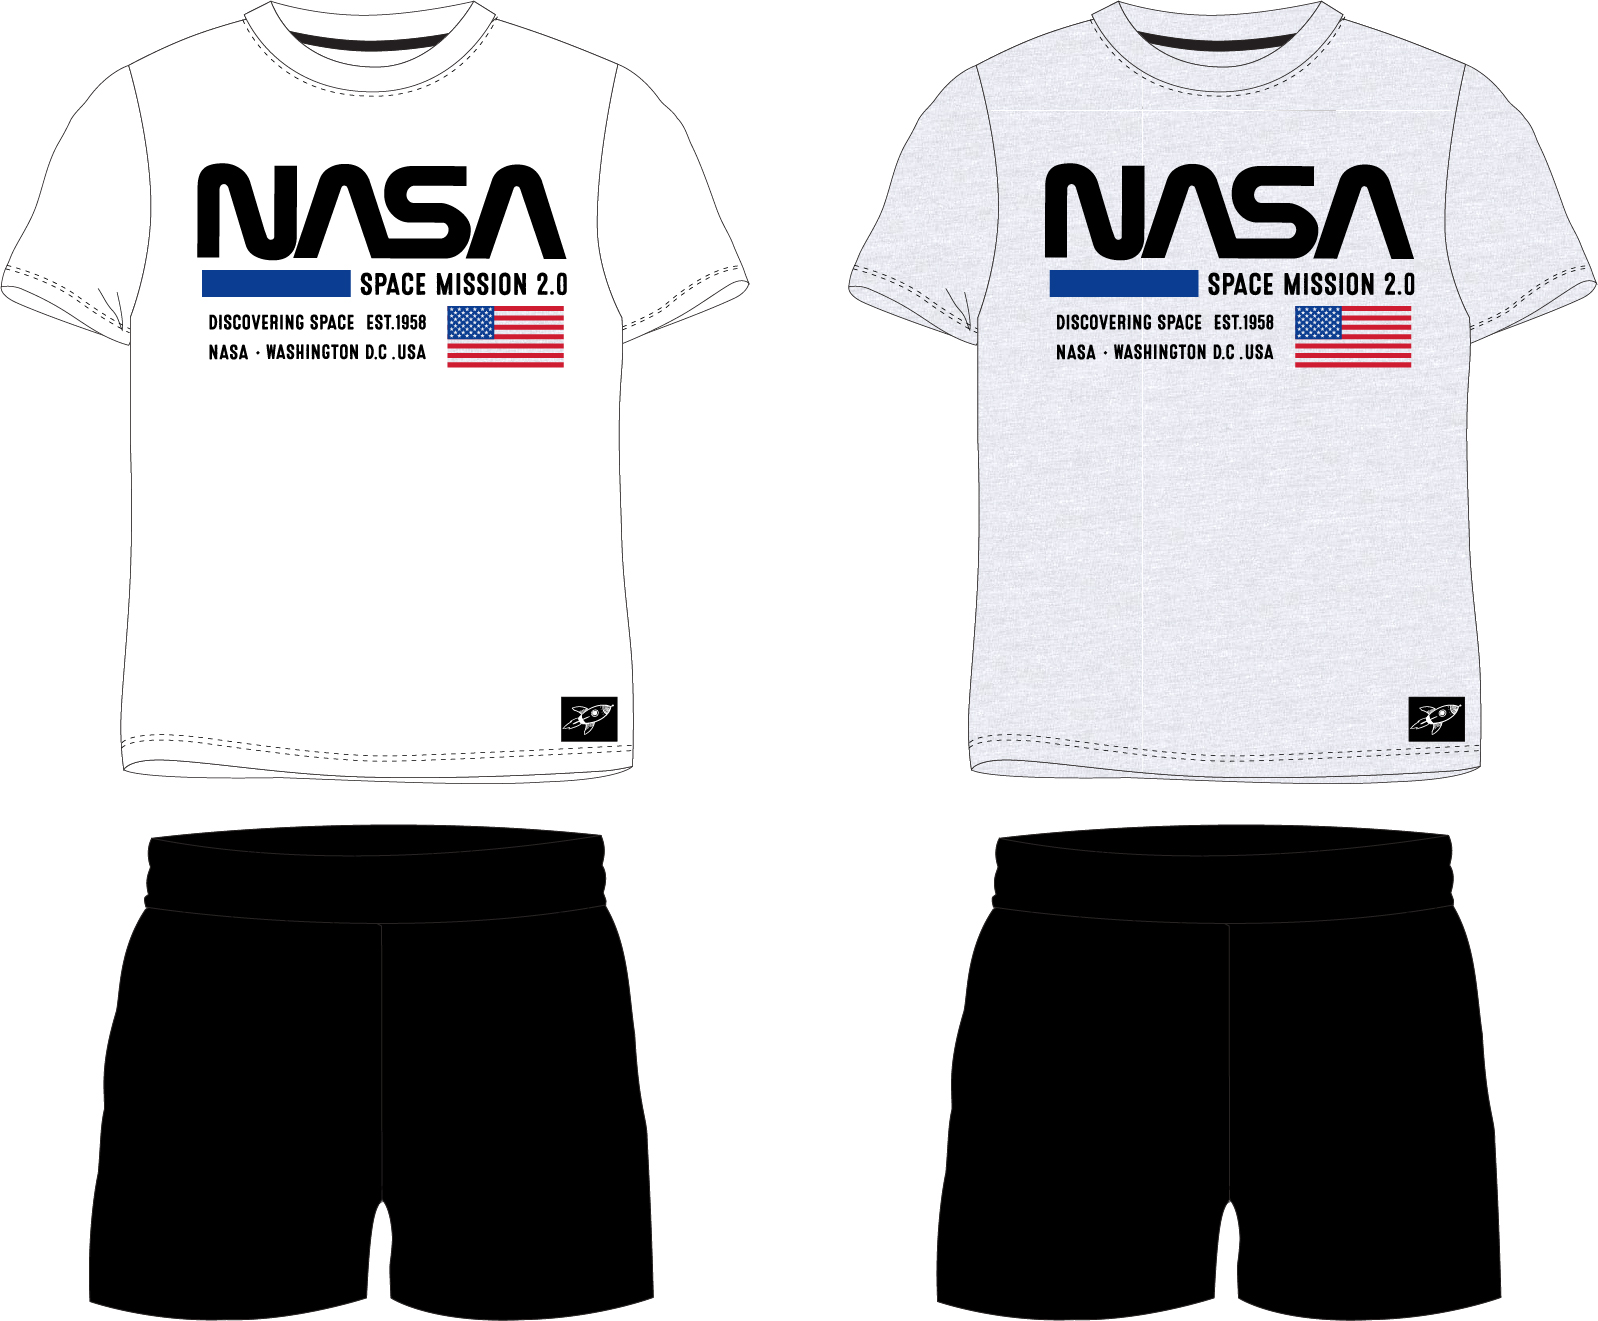 Nasa - licence Chlapecké pyžamo - NASA 5204337, bílá / černá Barva: Bílá, Velikost: 146-152